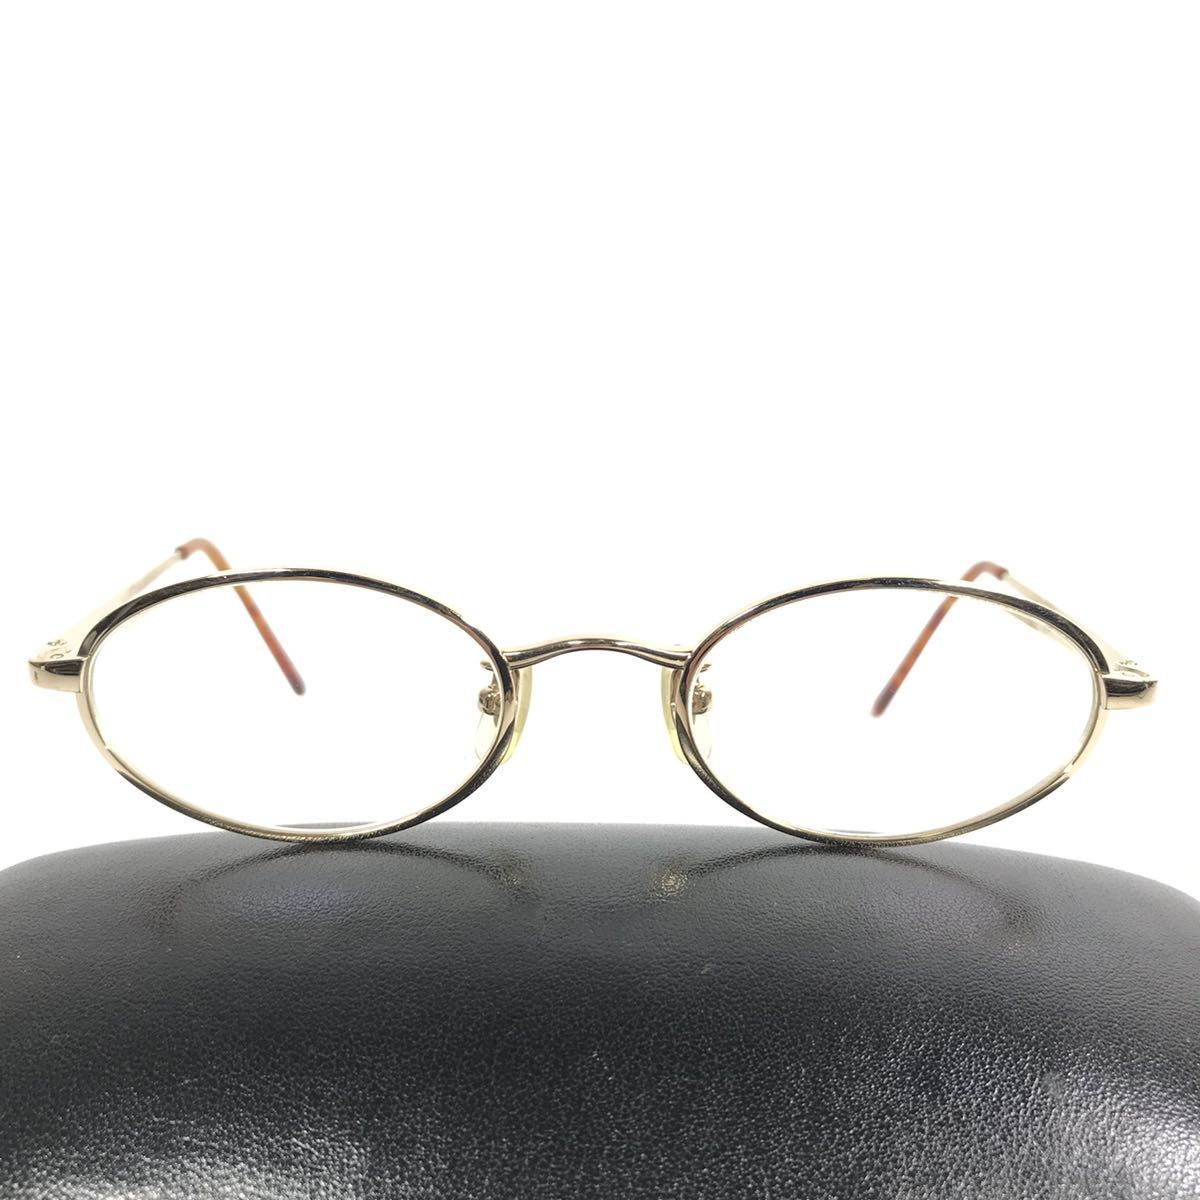 [ Calvin Klein ] подлинный товар CalvinKlein очки Logo Temple 3465T Brown серебряный цвет раз входить солнцезащитные очки очки мужской женский стоимость доставки 520 иен 